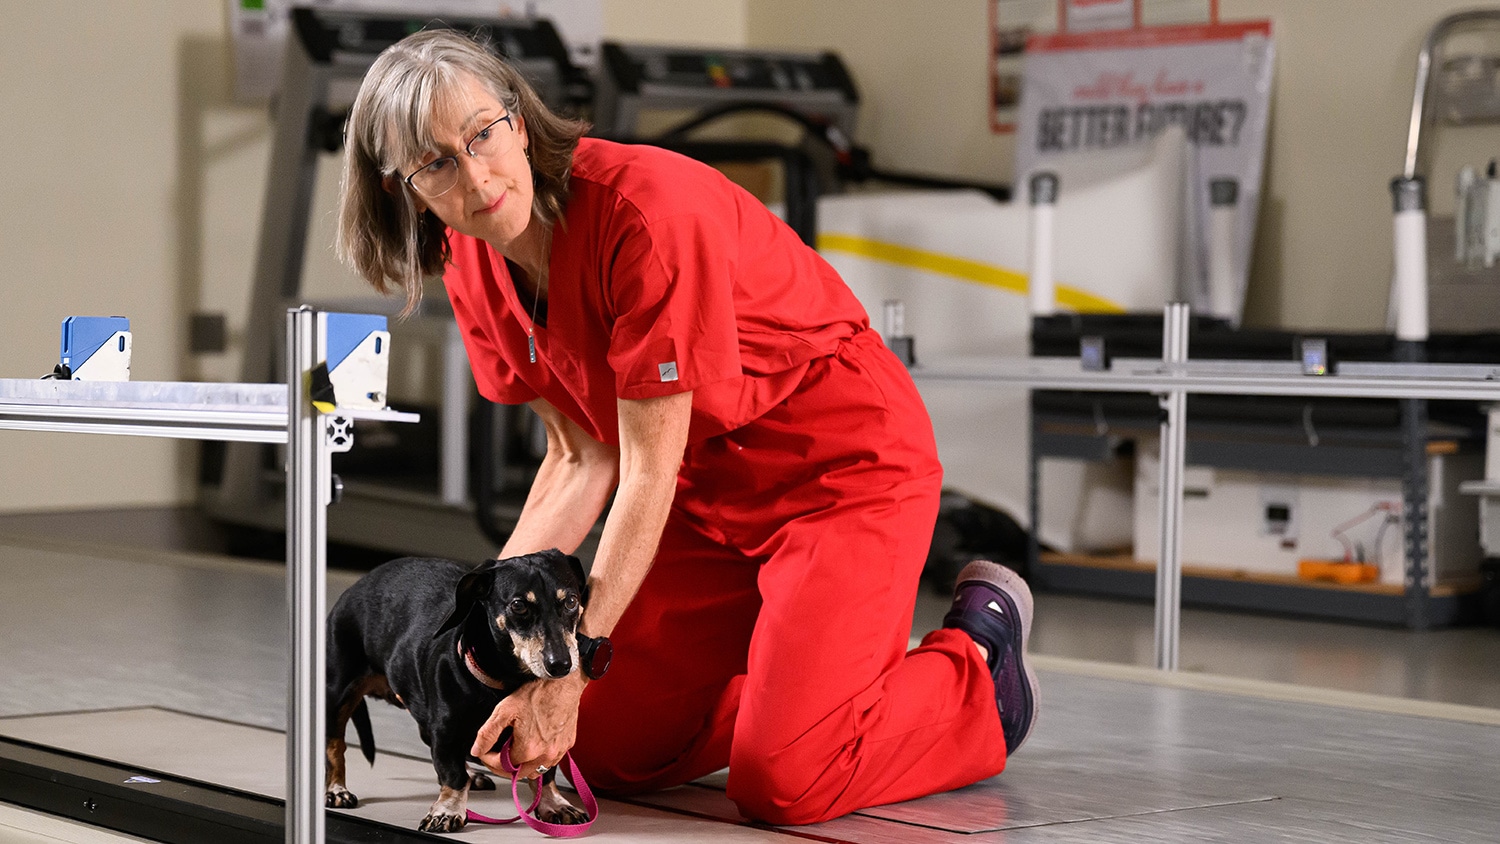 Doctor Olby assists older dog